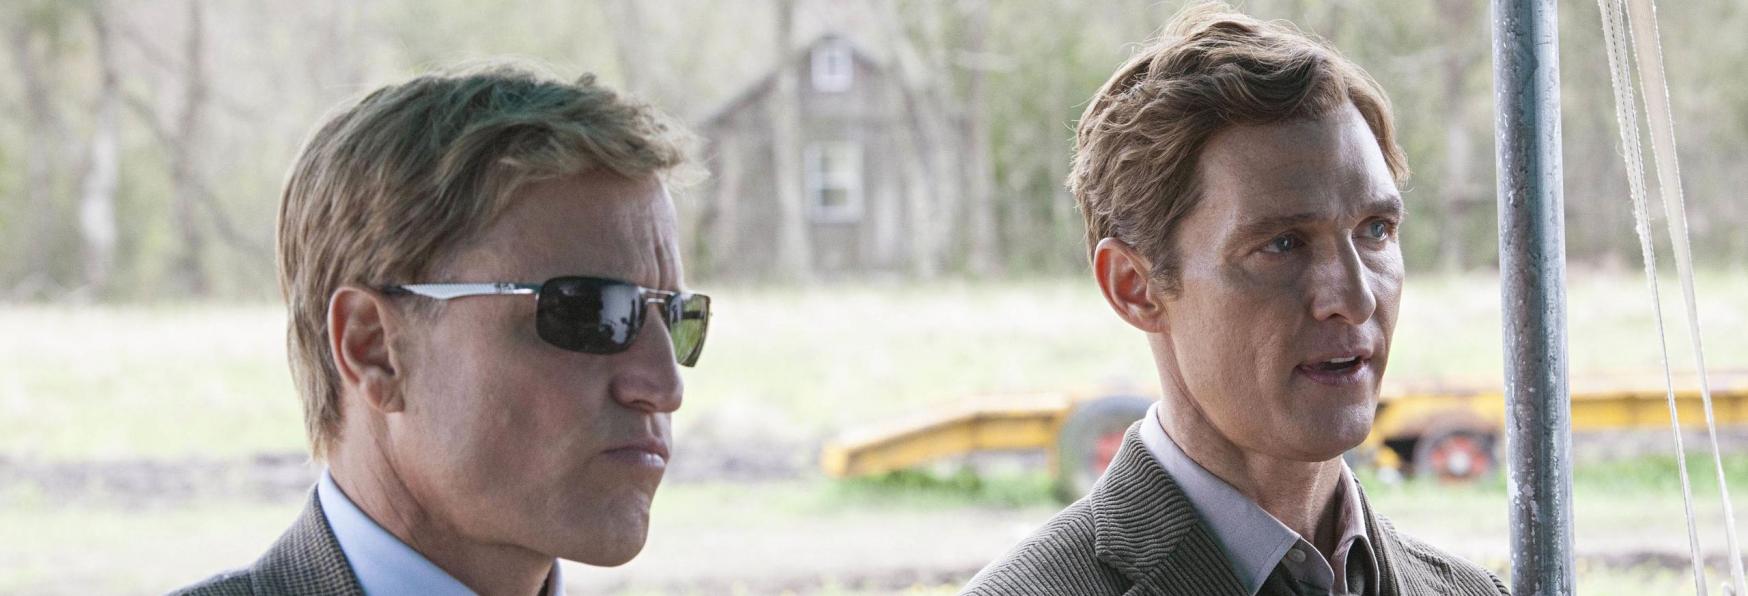 Matthew McConaughey e Woody Harrelson protagonisti della nuova Serie TV di Apple